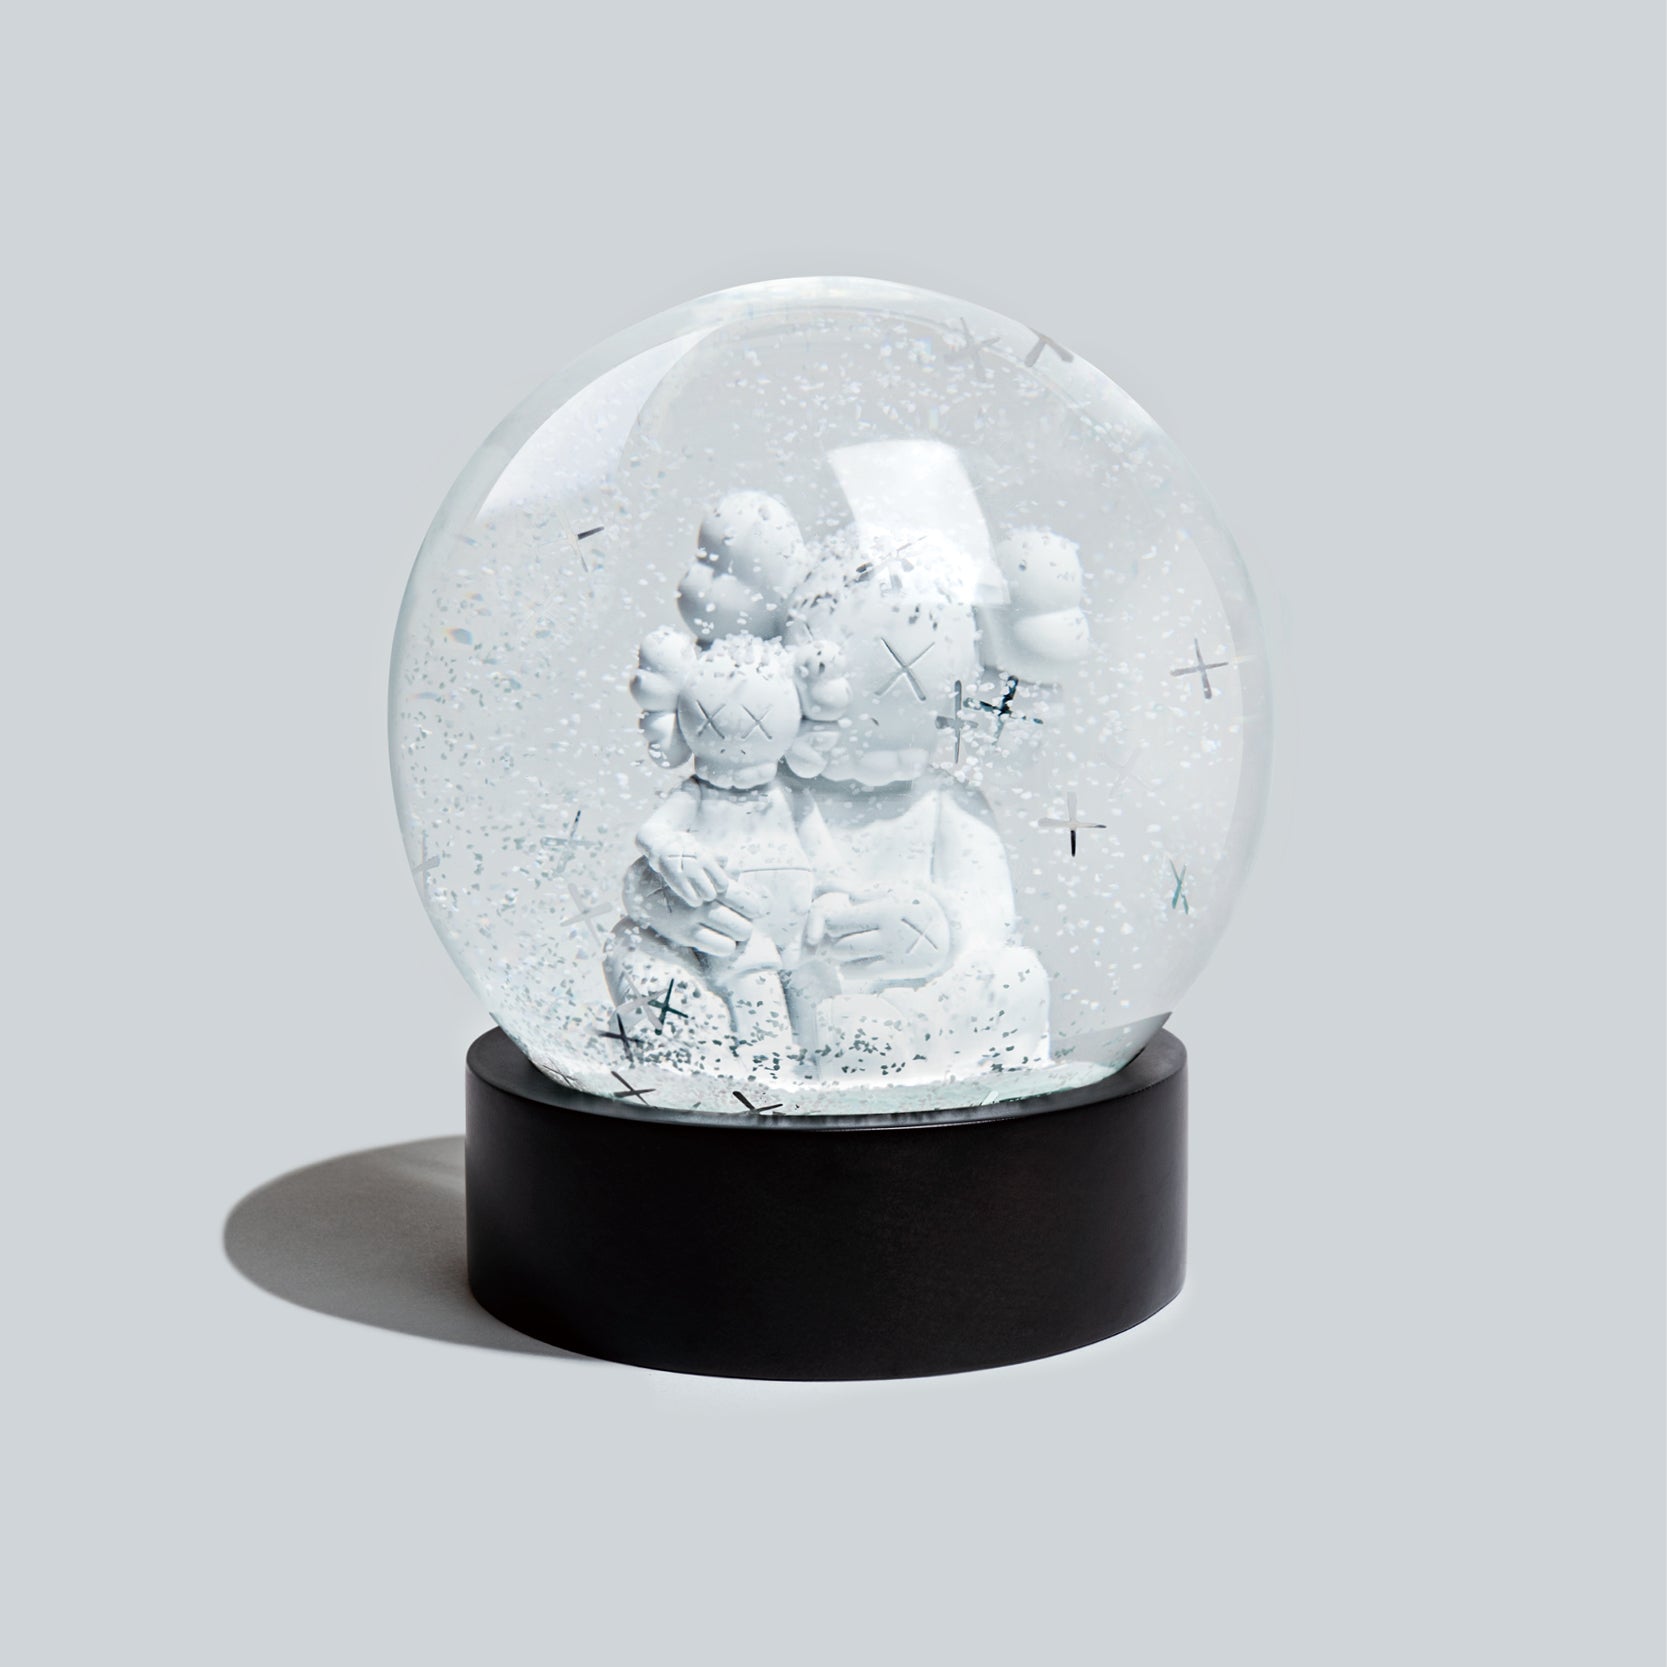 St. Louis Keychain - 2D Snow Globe (DZ)